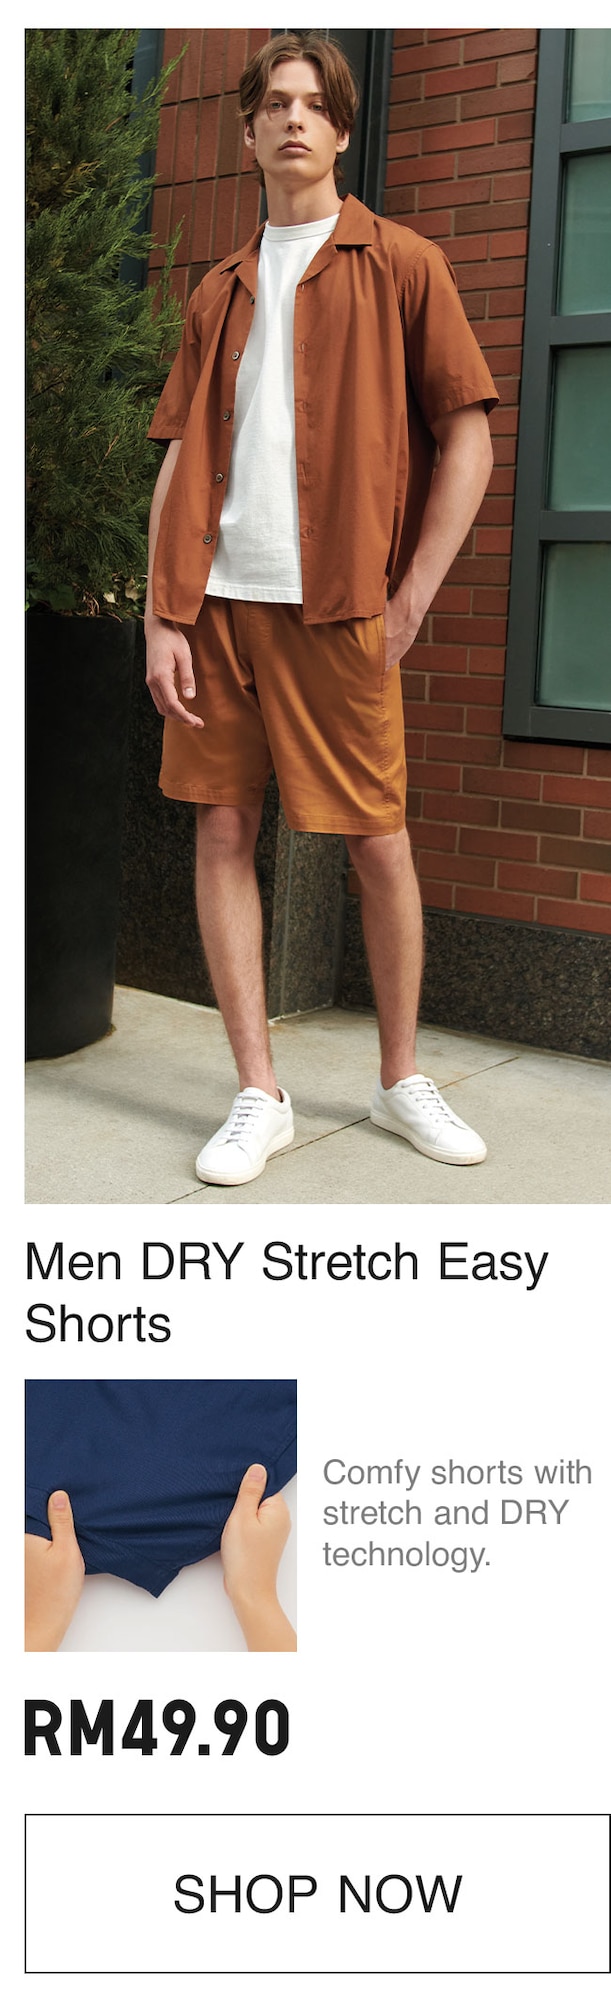 MEN DRY SRTETCH EASY SHORTS